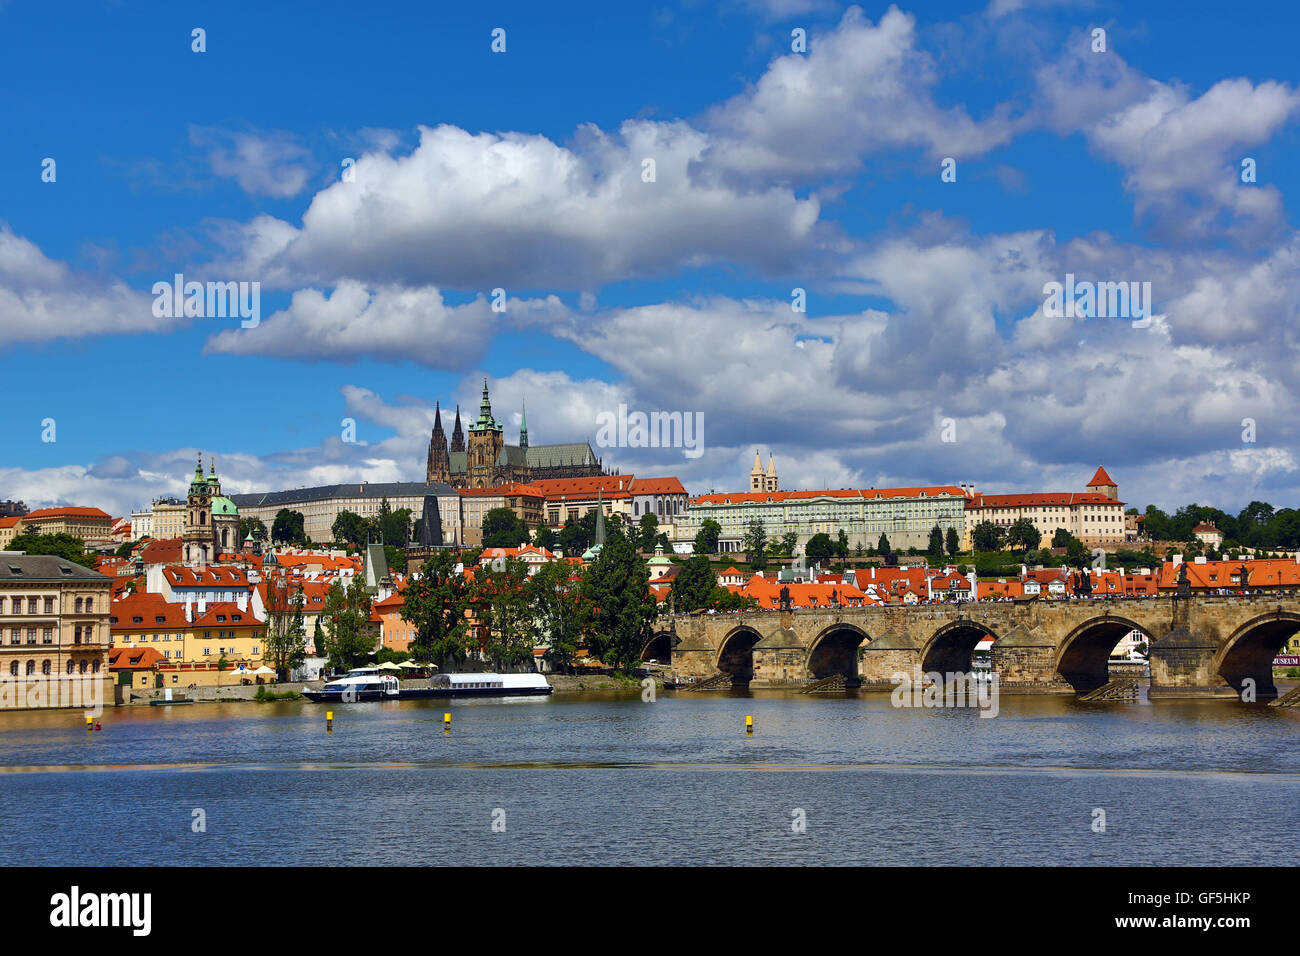 Catedral de San Vito y el Castillo de Praga con el Puente de Carlos sobre el río Moldava en Praga, República Checa Foto de stock